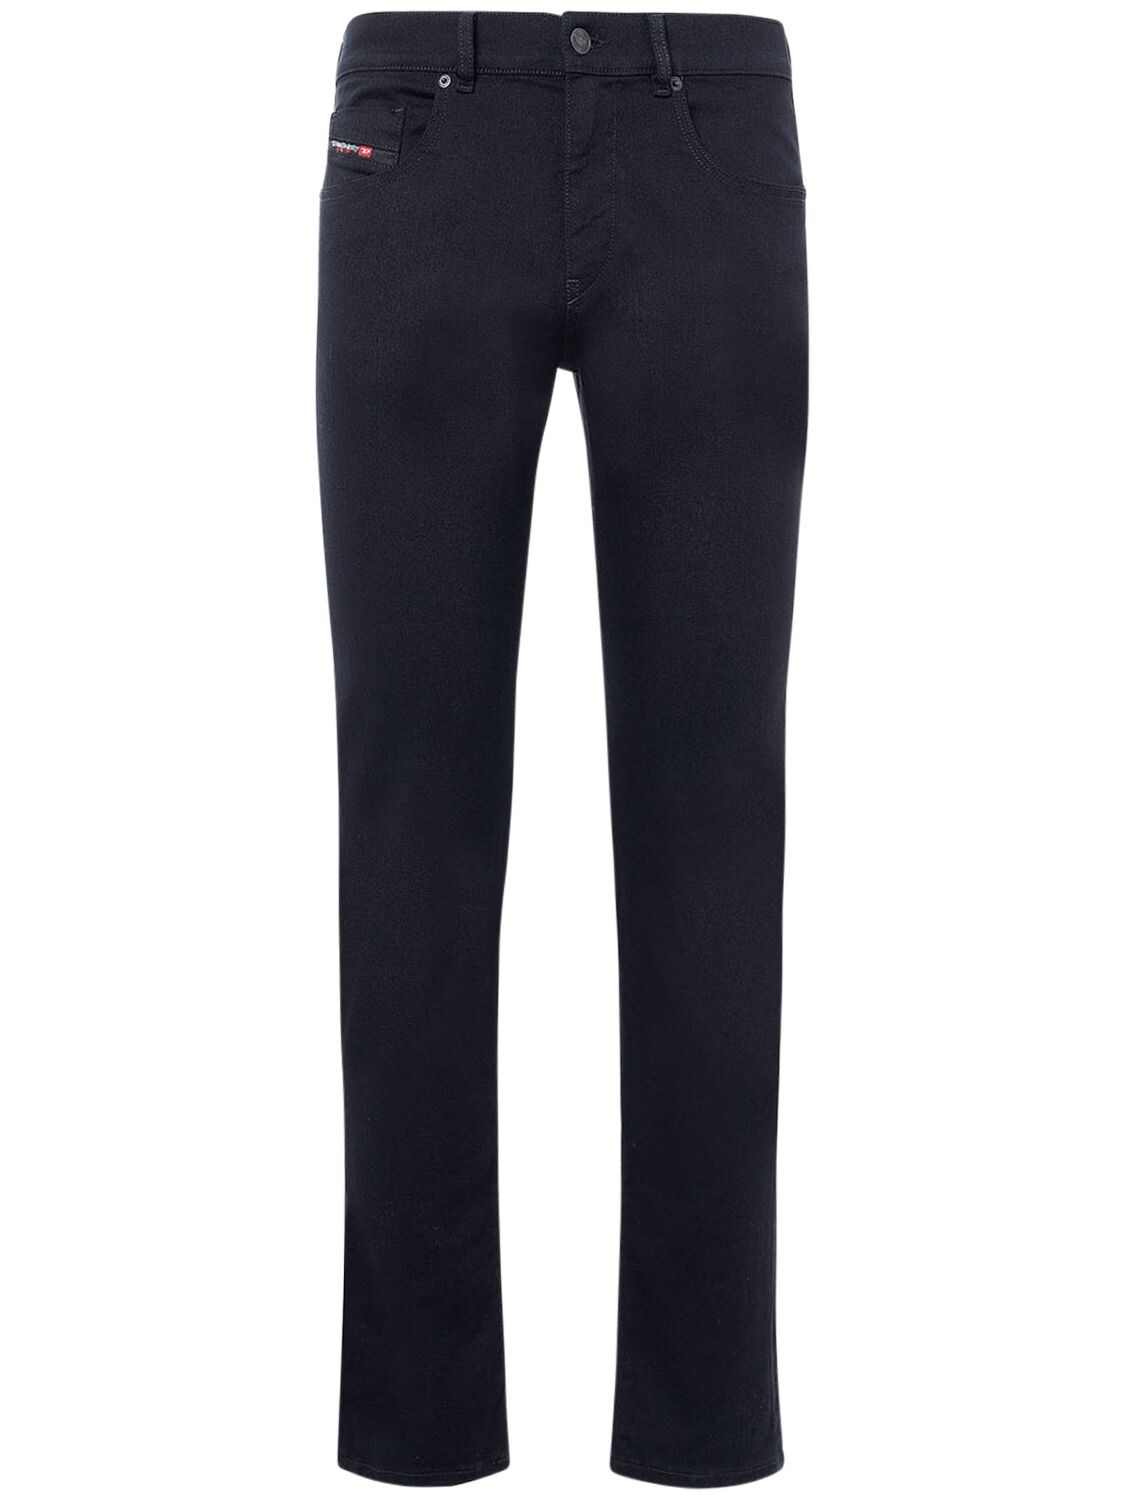 Jeans Slim Fit D-strukt In Denim Di Cotone 16.4cm - DIESEL - Modalova